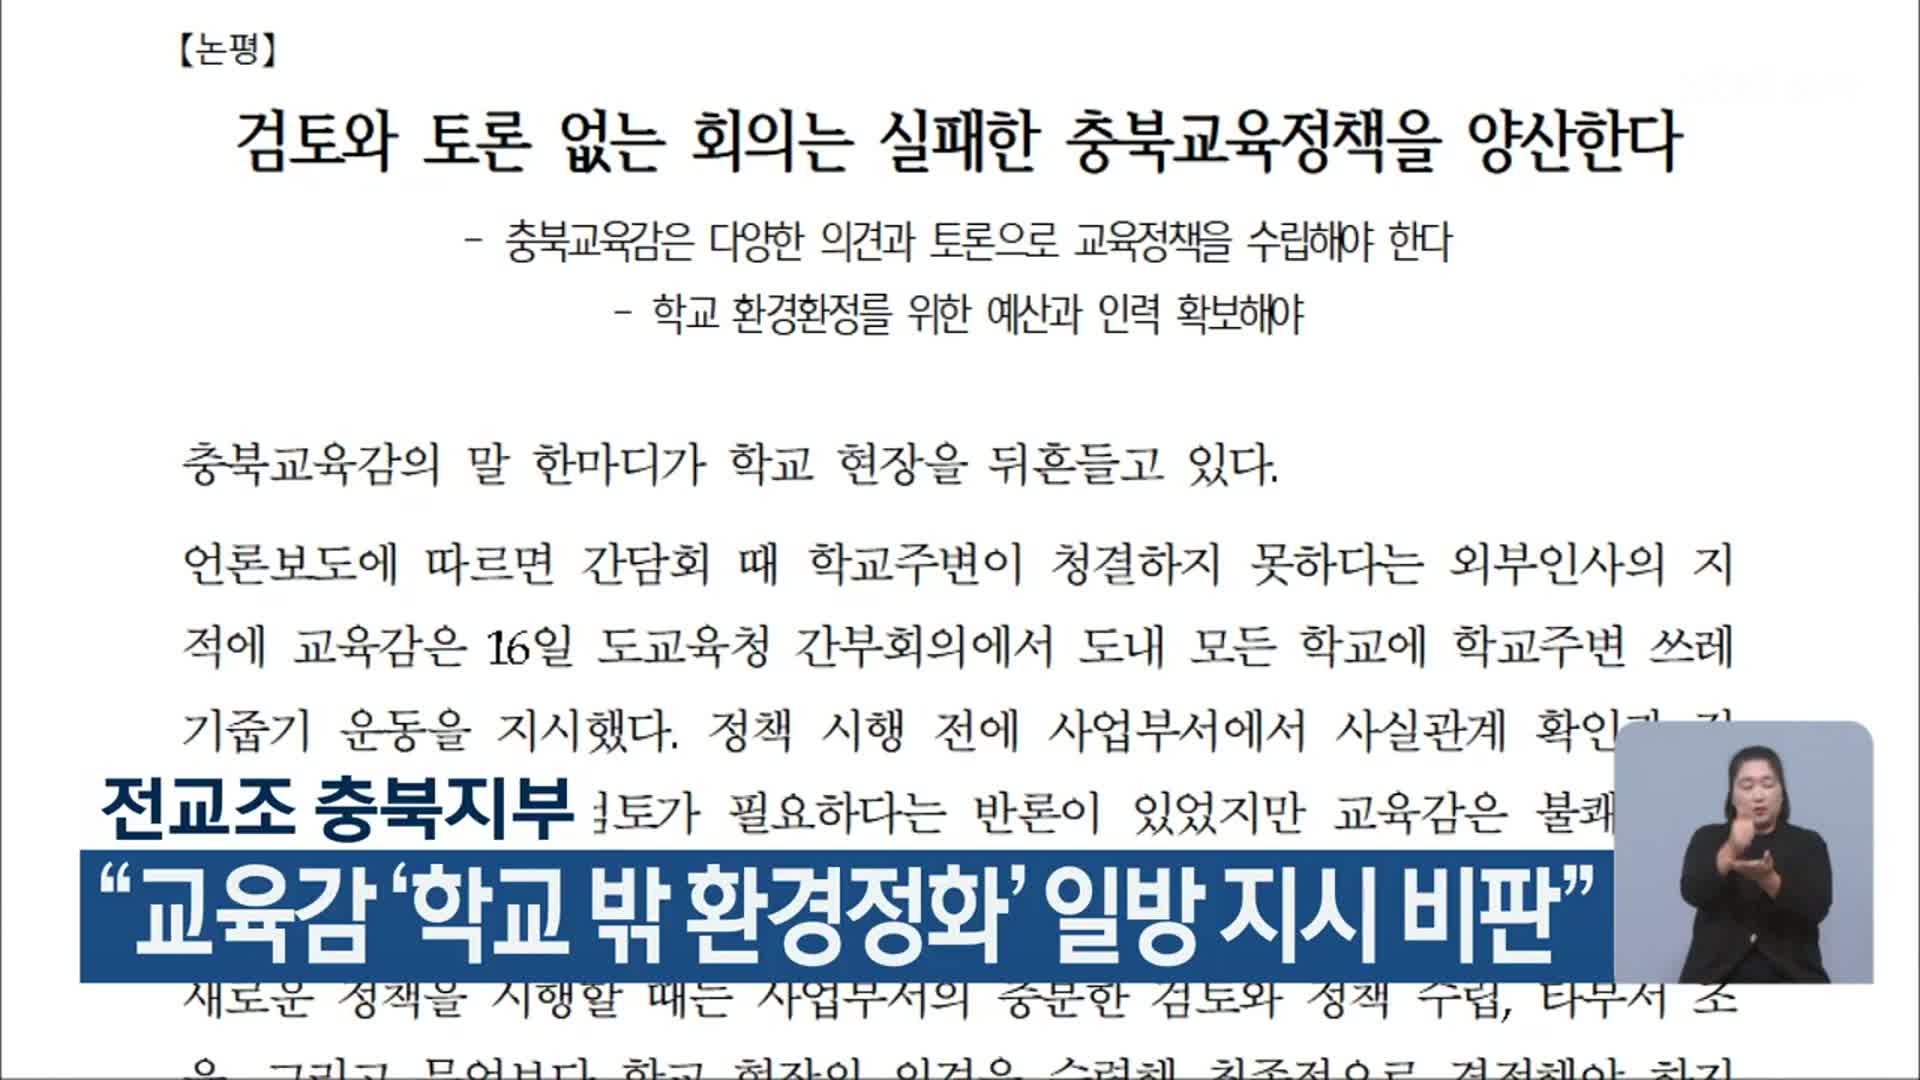 전교조 충북지부, “교육감 ‘학교 밖 환경정화’ 일방 지시 비판”